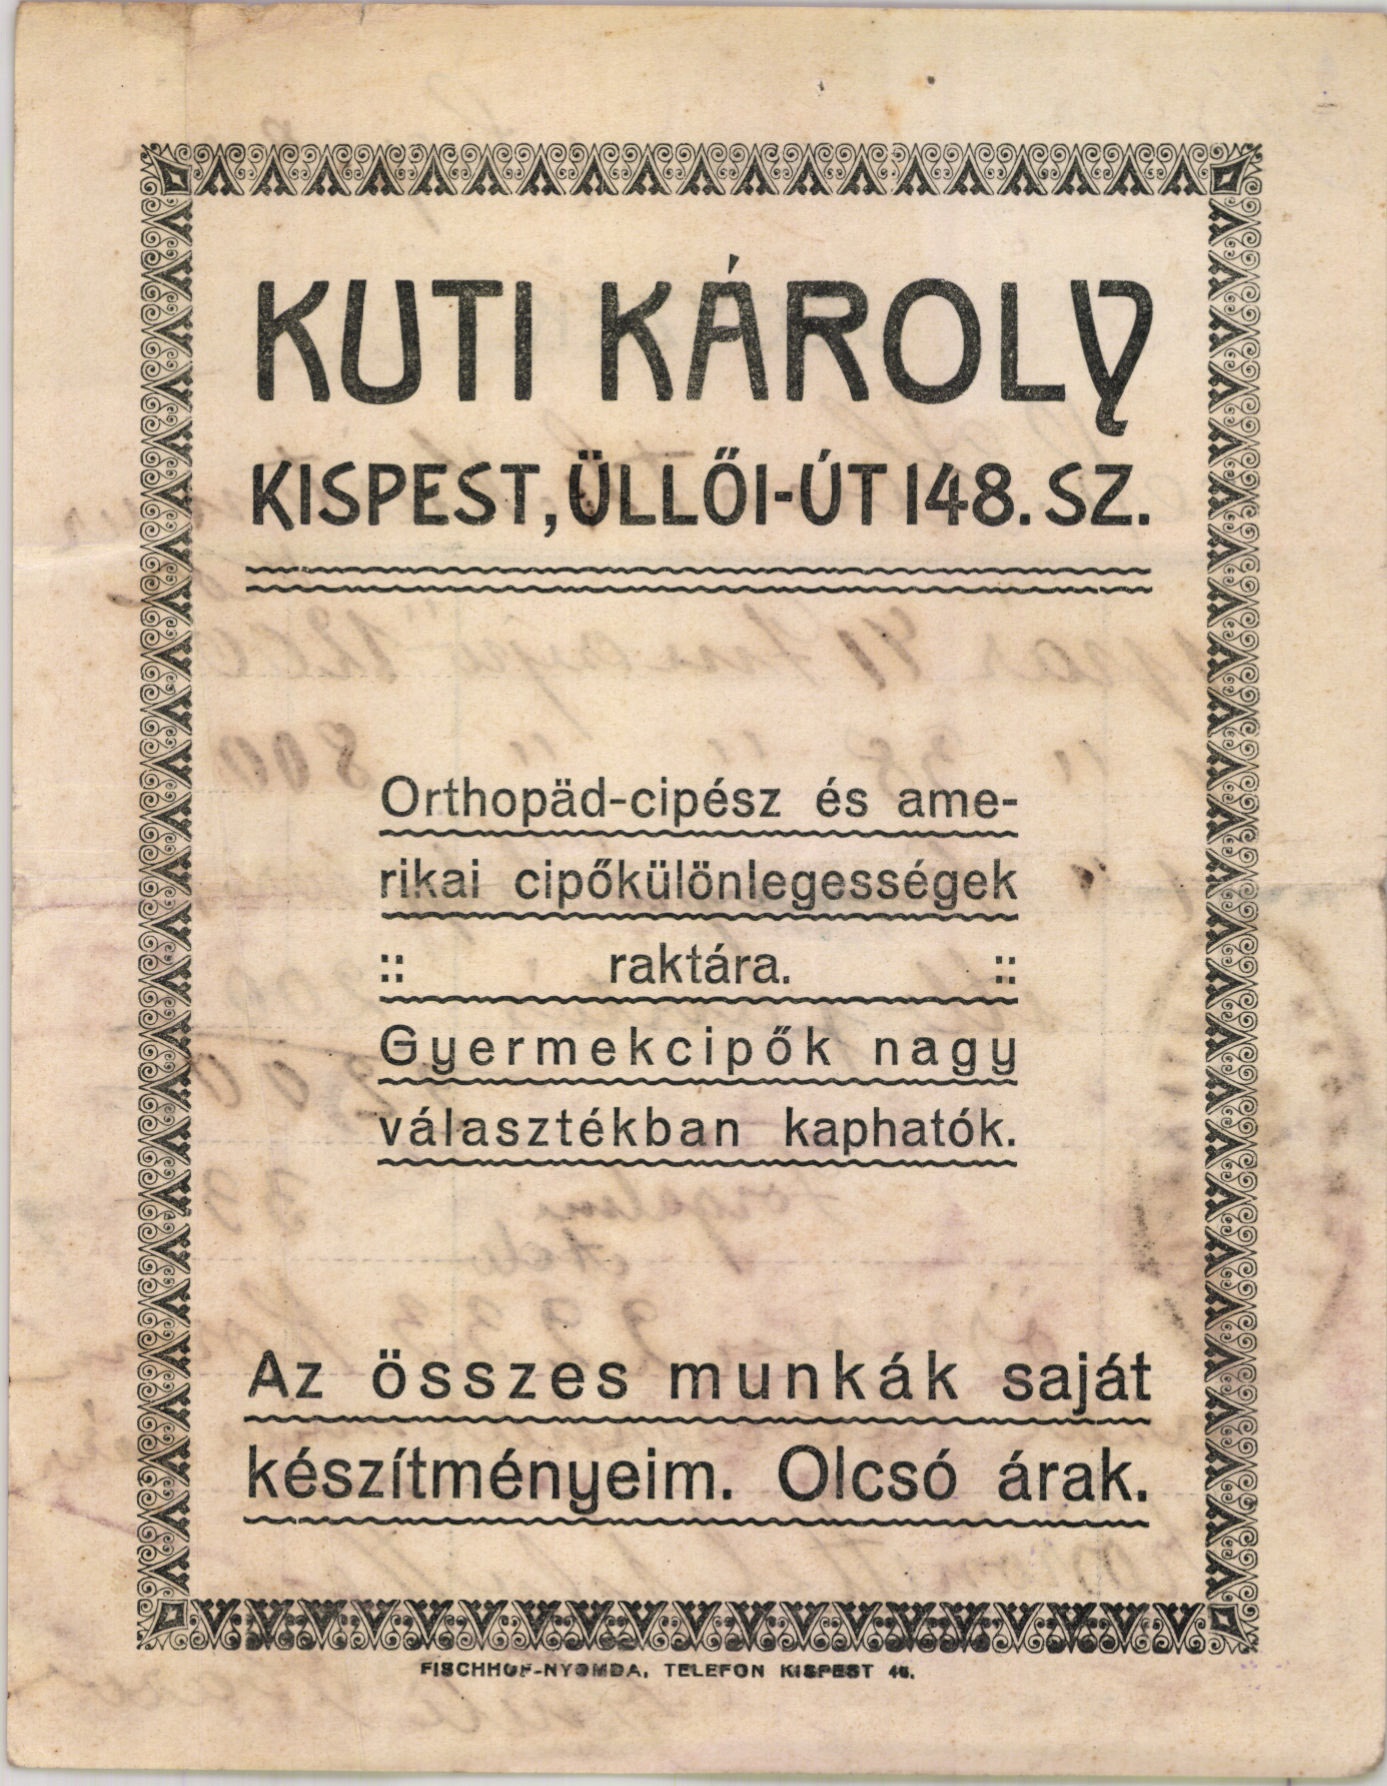 Kuti Károly orthopäc-cipész és amerikai cipőkülönlegességek raktára (Magyar Kereskedelmi és Vendéglátóipari Múzeum CC BY-NC-SA)